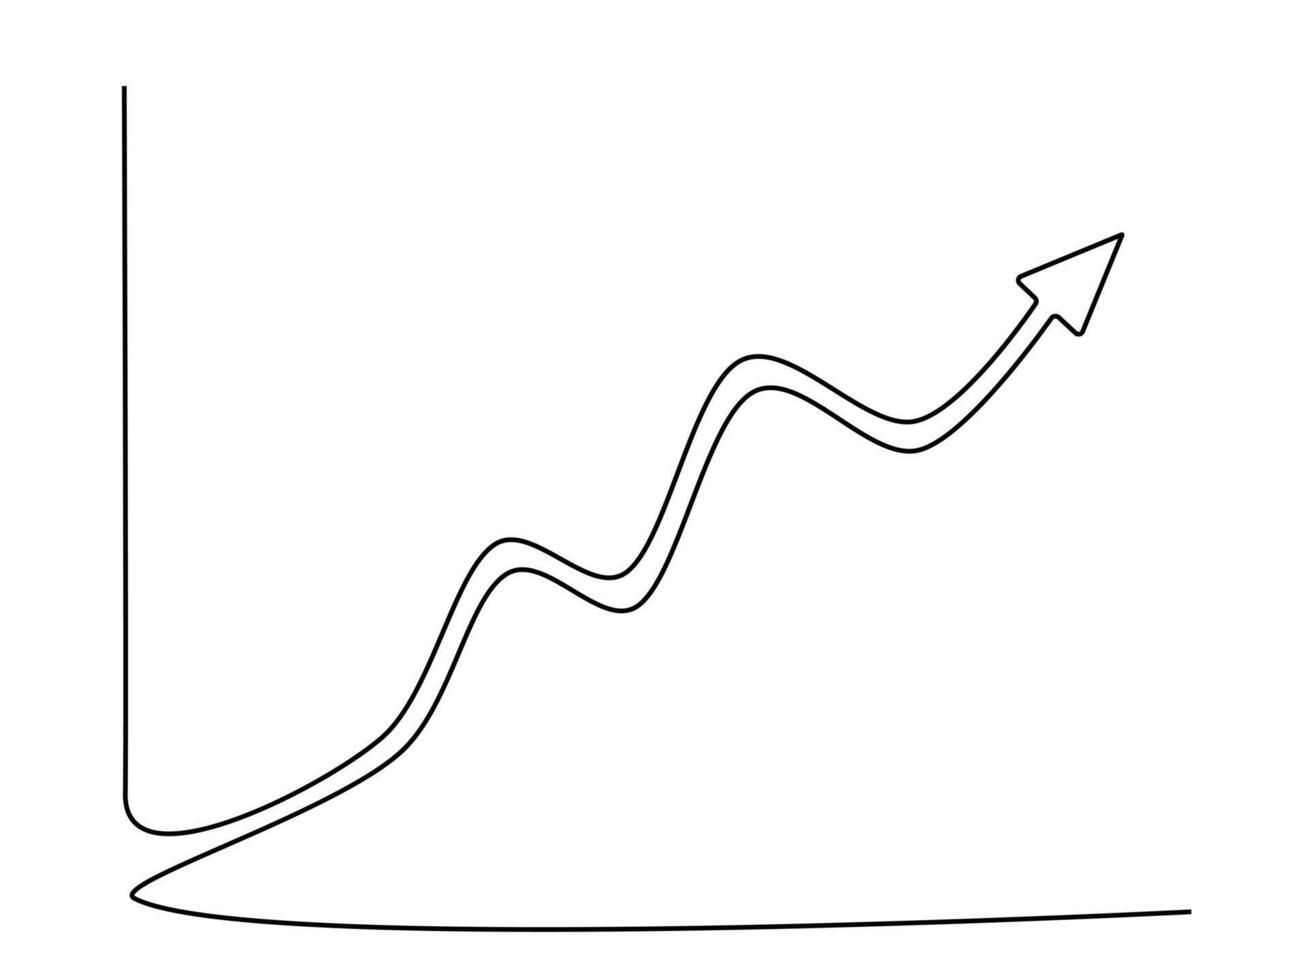 dibujar un continuo línea de el crecimiento grafico vector